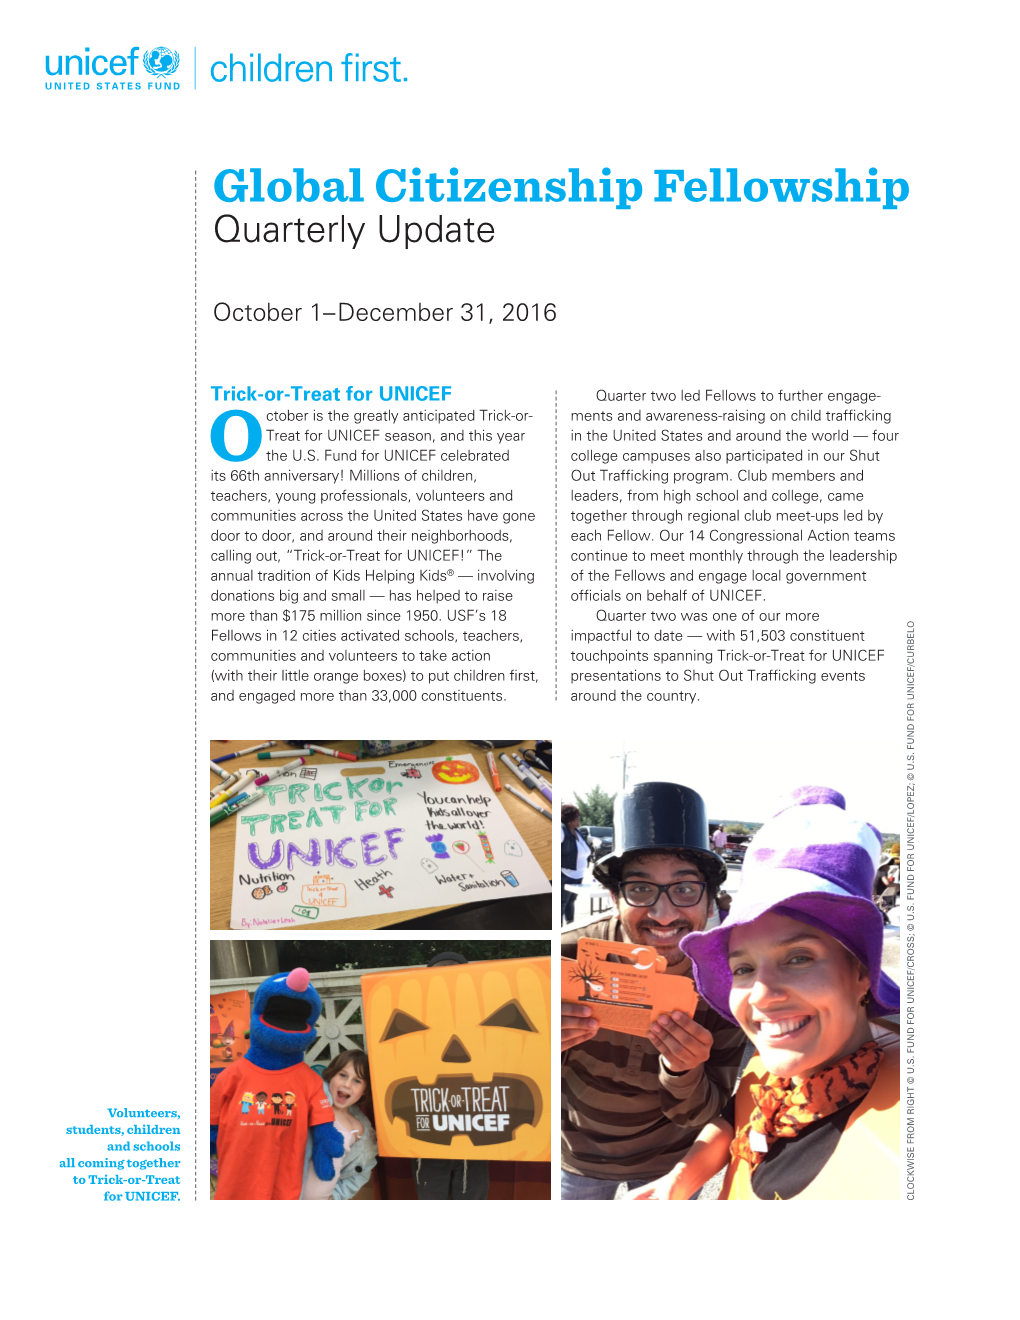 Global Citizenship Fellowship Quarterly Update